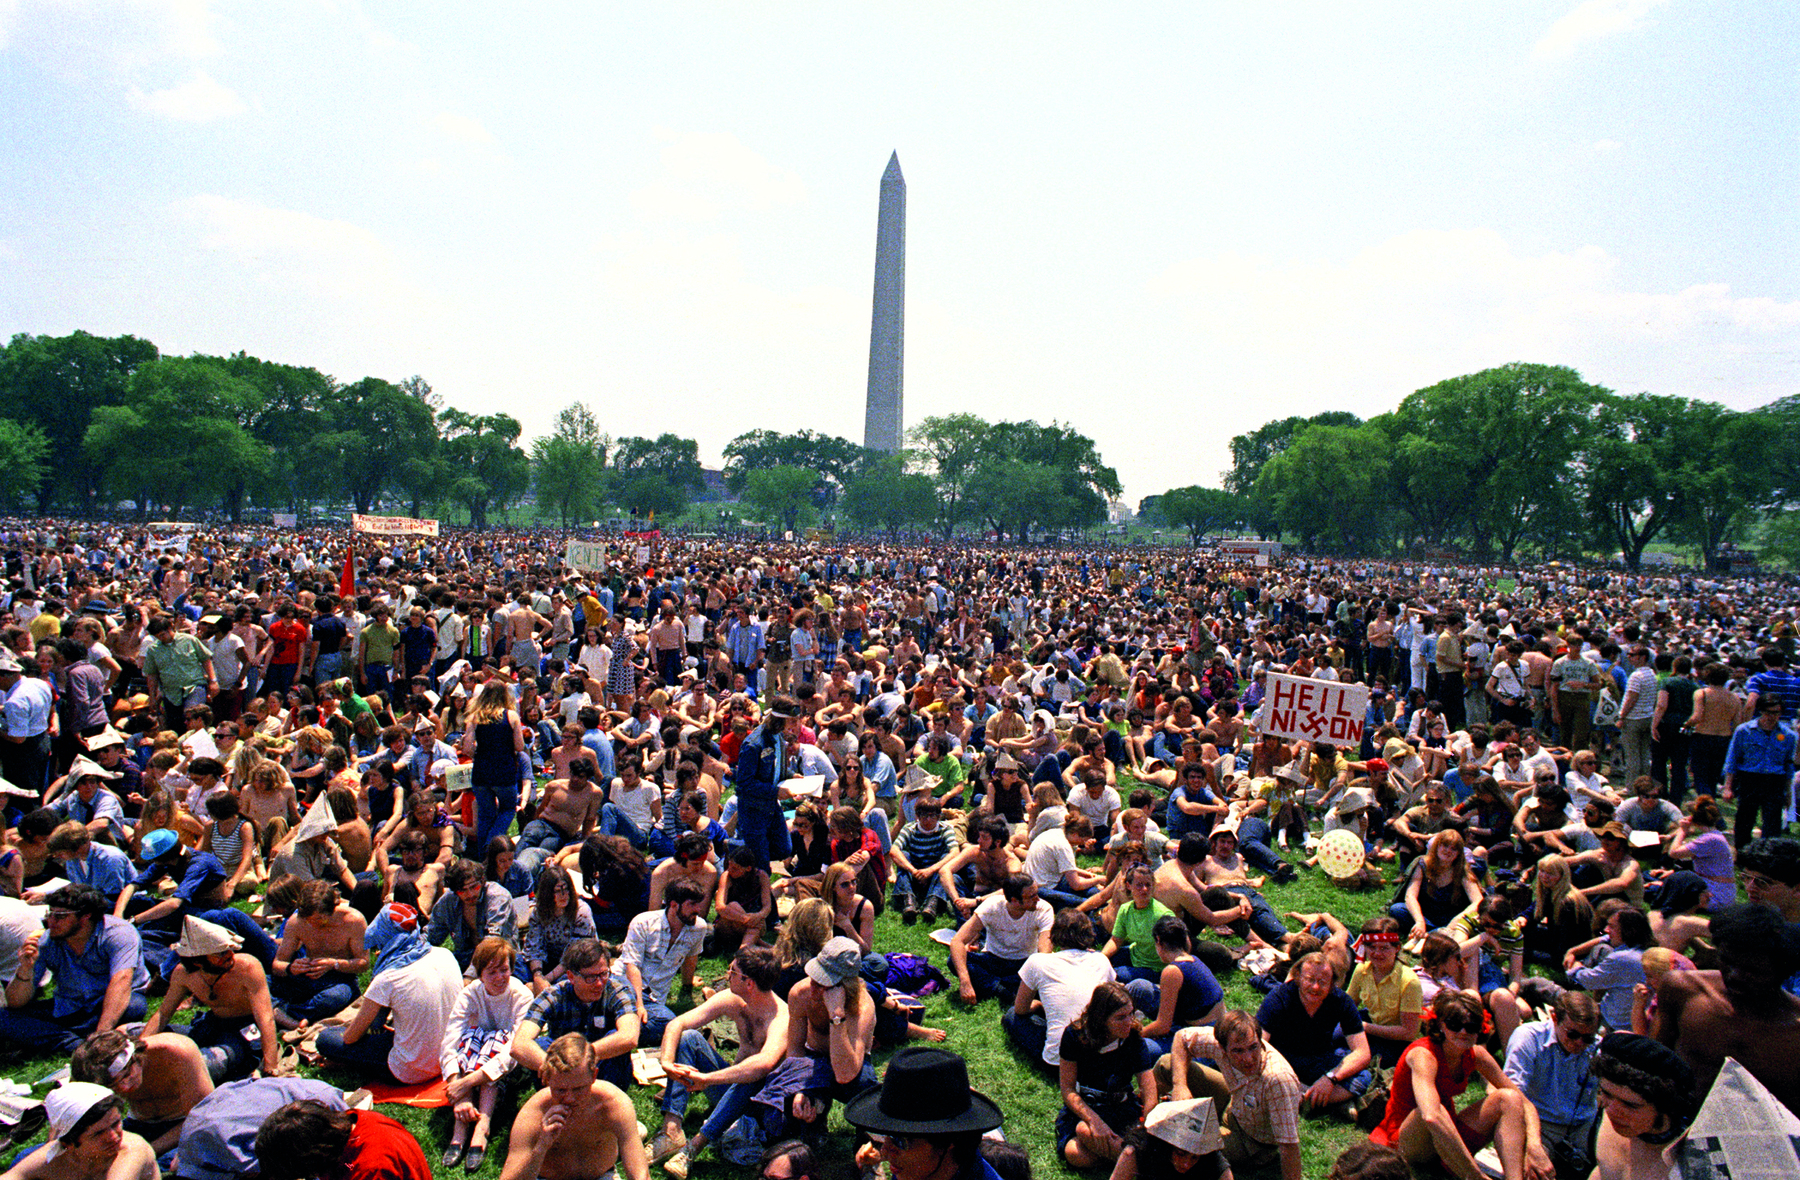 Fotografia. Vista de local aberto com centenas de pessoas sentadas sobre uma grama verde. Ao fundo, muitas árvores e um obelisco. No alto, céu azul-claro e nuvens brancas.